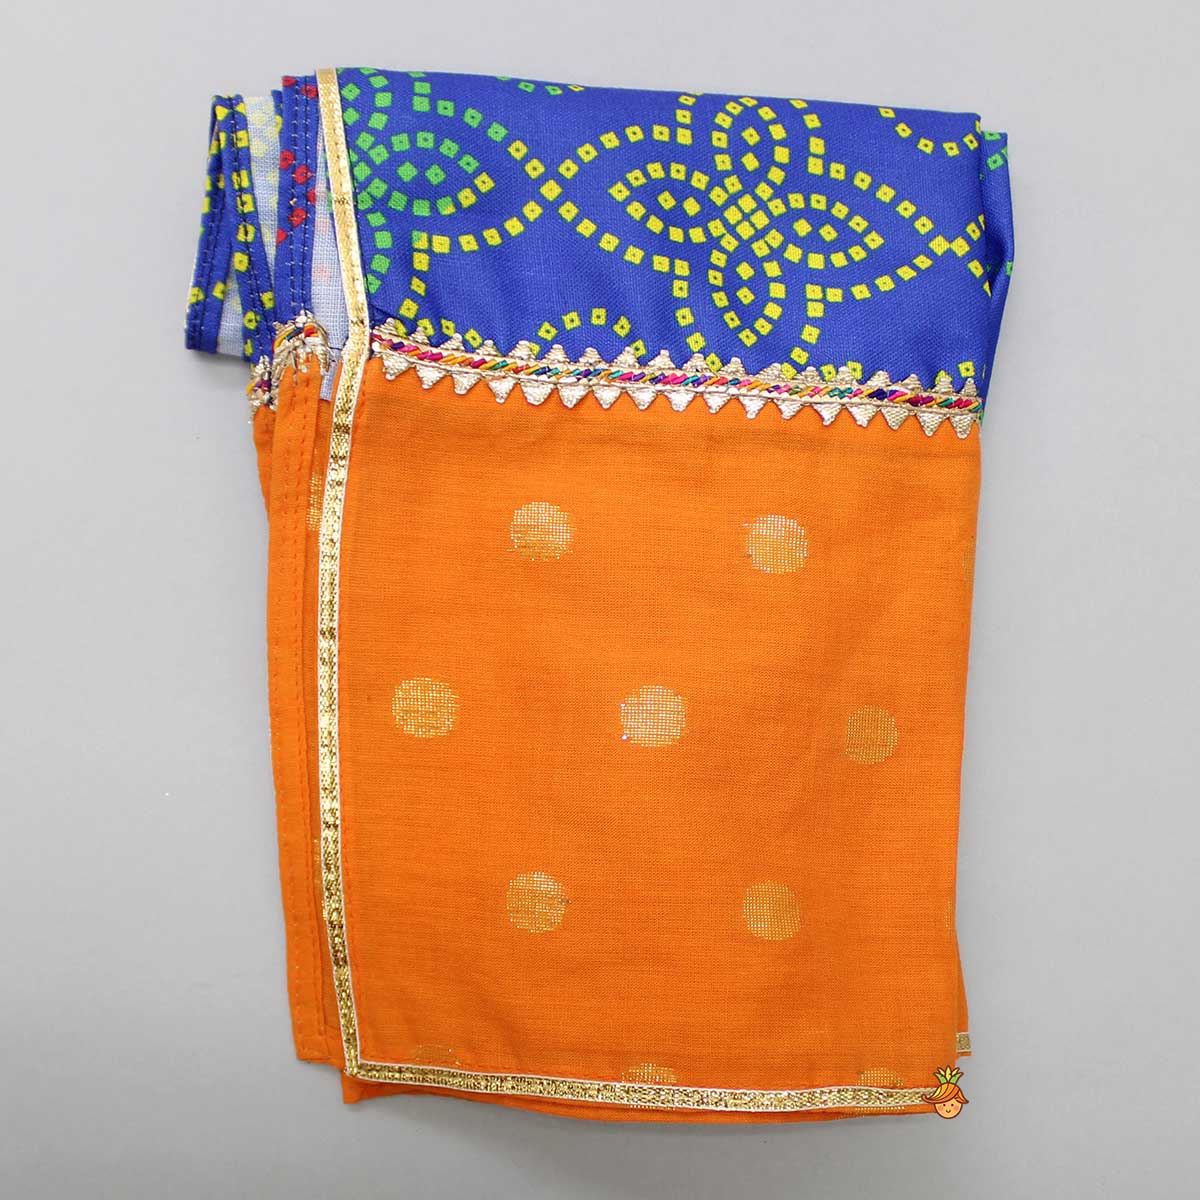 Flared Sleeves Top And Bandhani Printed Sharara With Multicolour Dupatta